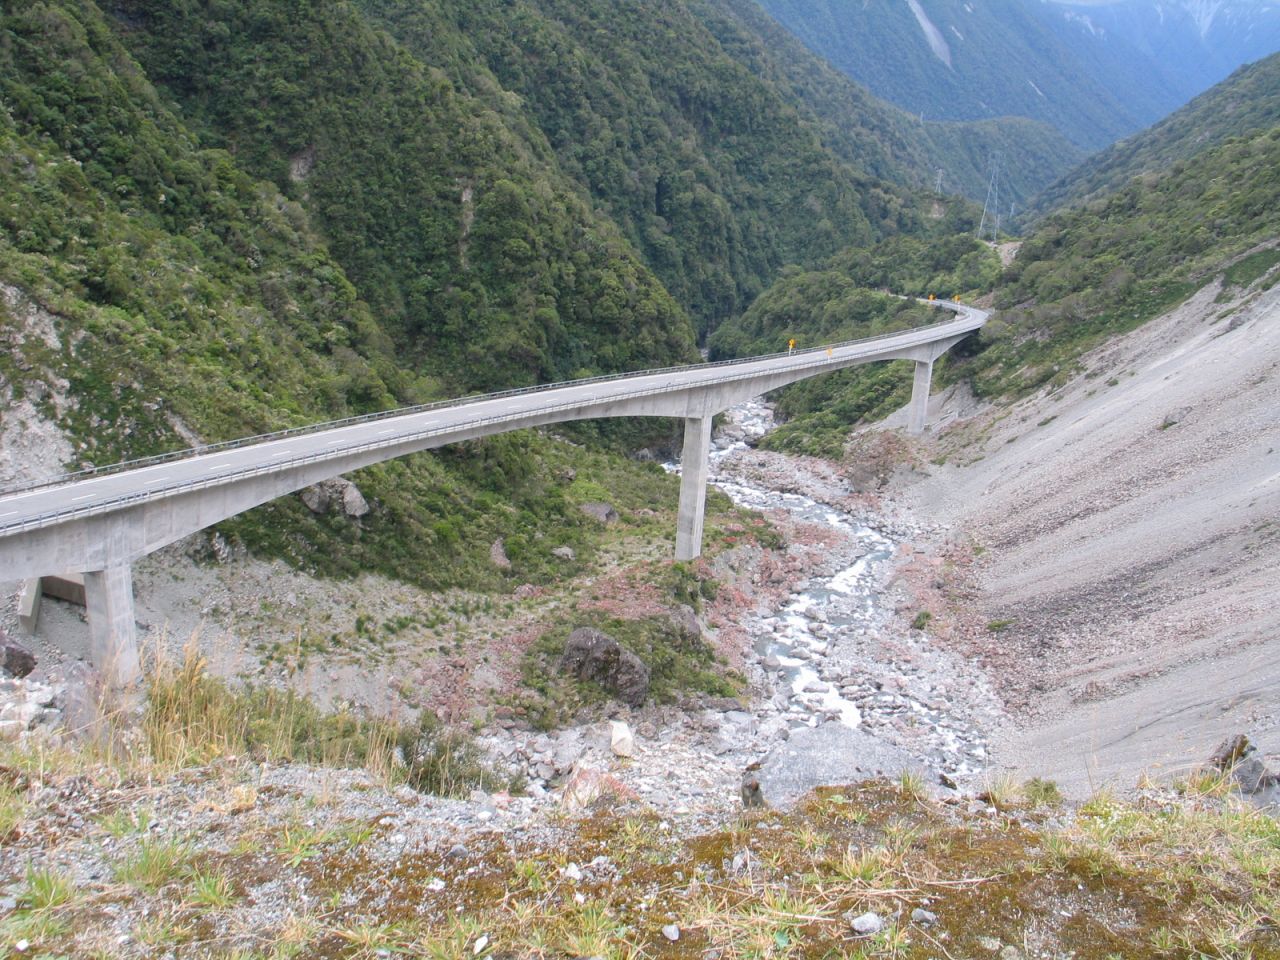 fotka / image Otira viaduct, New Zealand